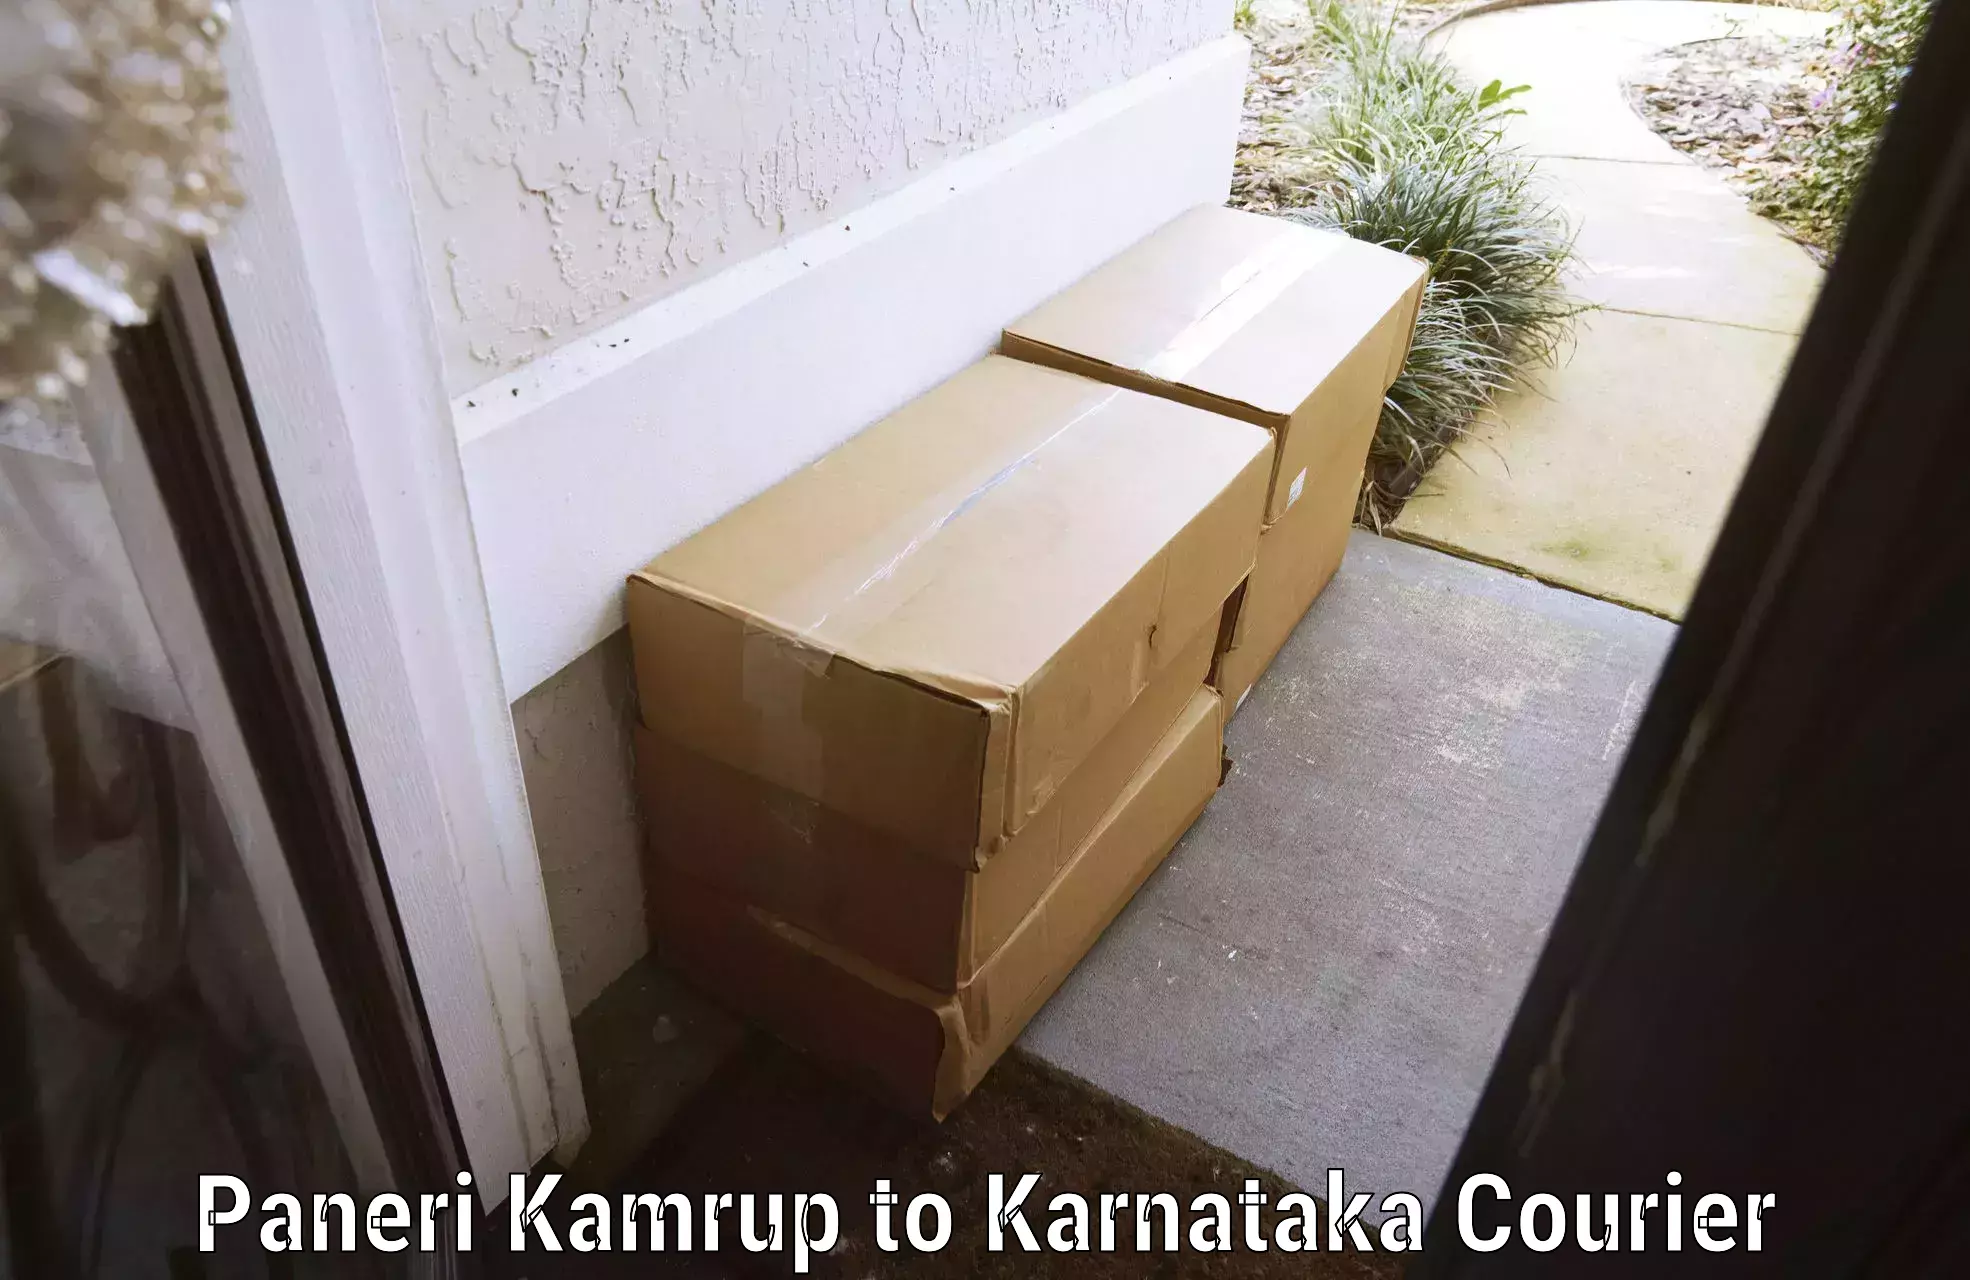 Luggage delivery solutions Paneri Kamrup to Karnataka